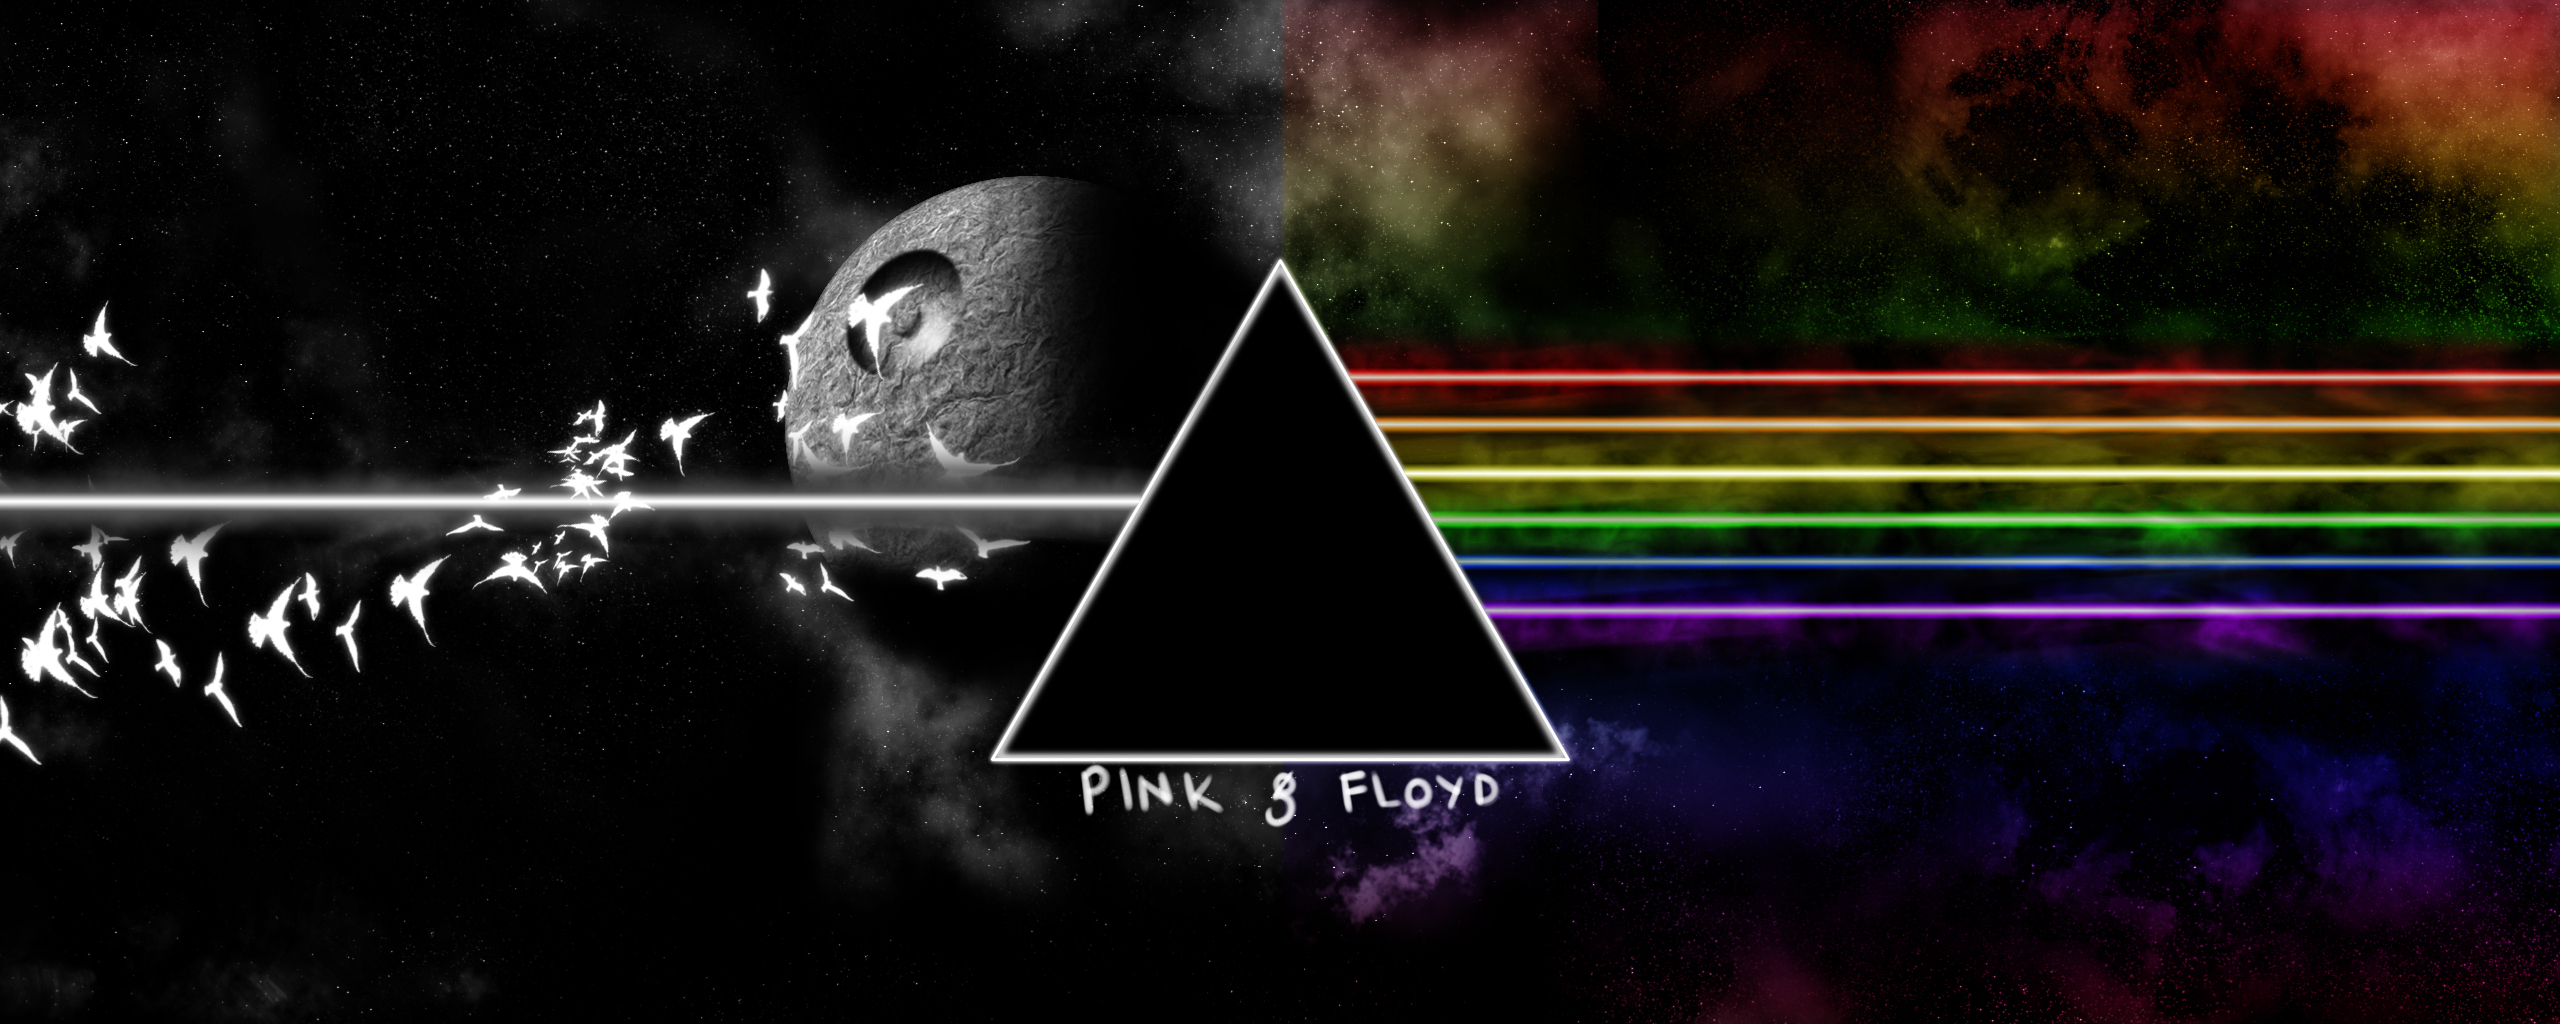 Biz Music HD Wallpaper Pink Floyd Image Image201 Htm